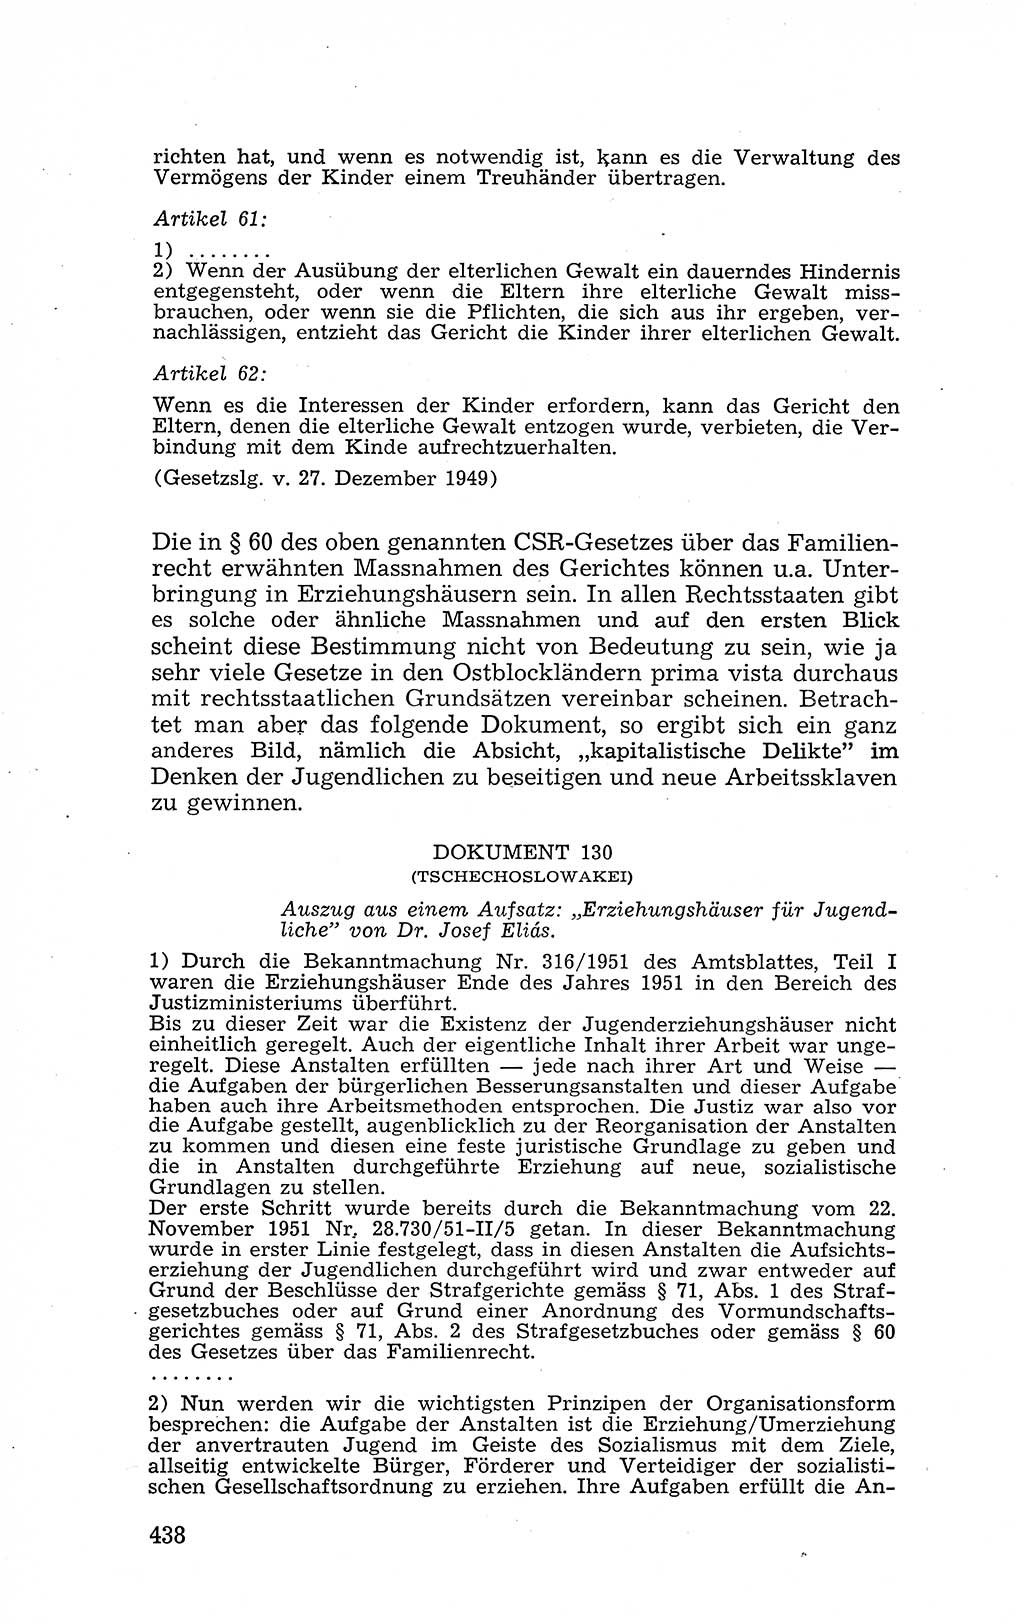 Recht in Fesseln, Dokumente, Internationale Juristen-Kommission [Bundesrepublik Deutschland (BRD)] 1955, Seite 438 (R. Dok. IJK BRD 1955, S. 438)